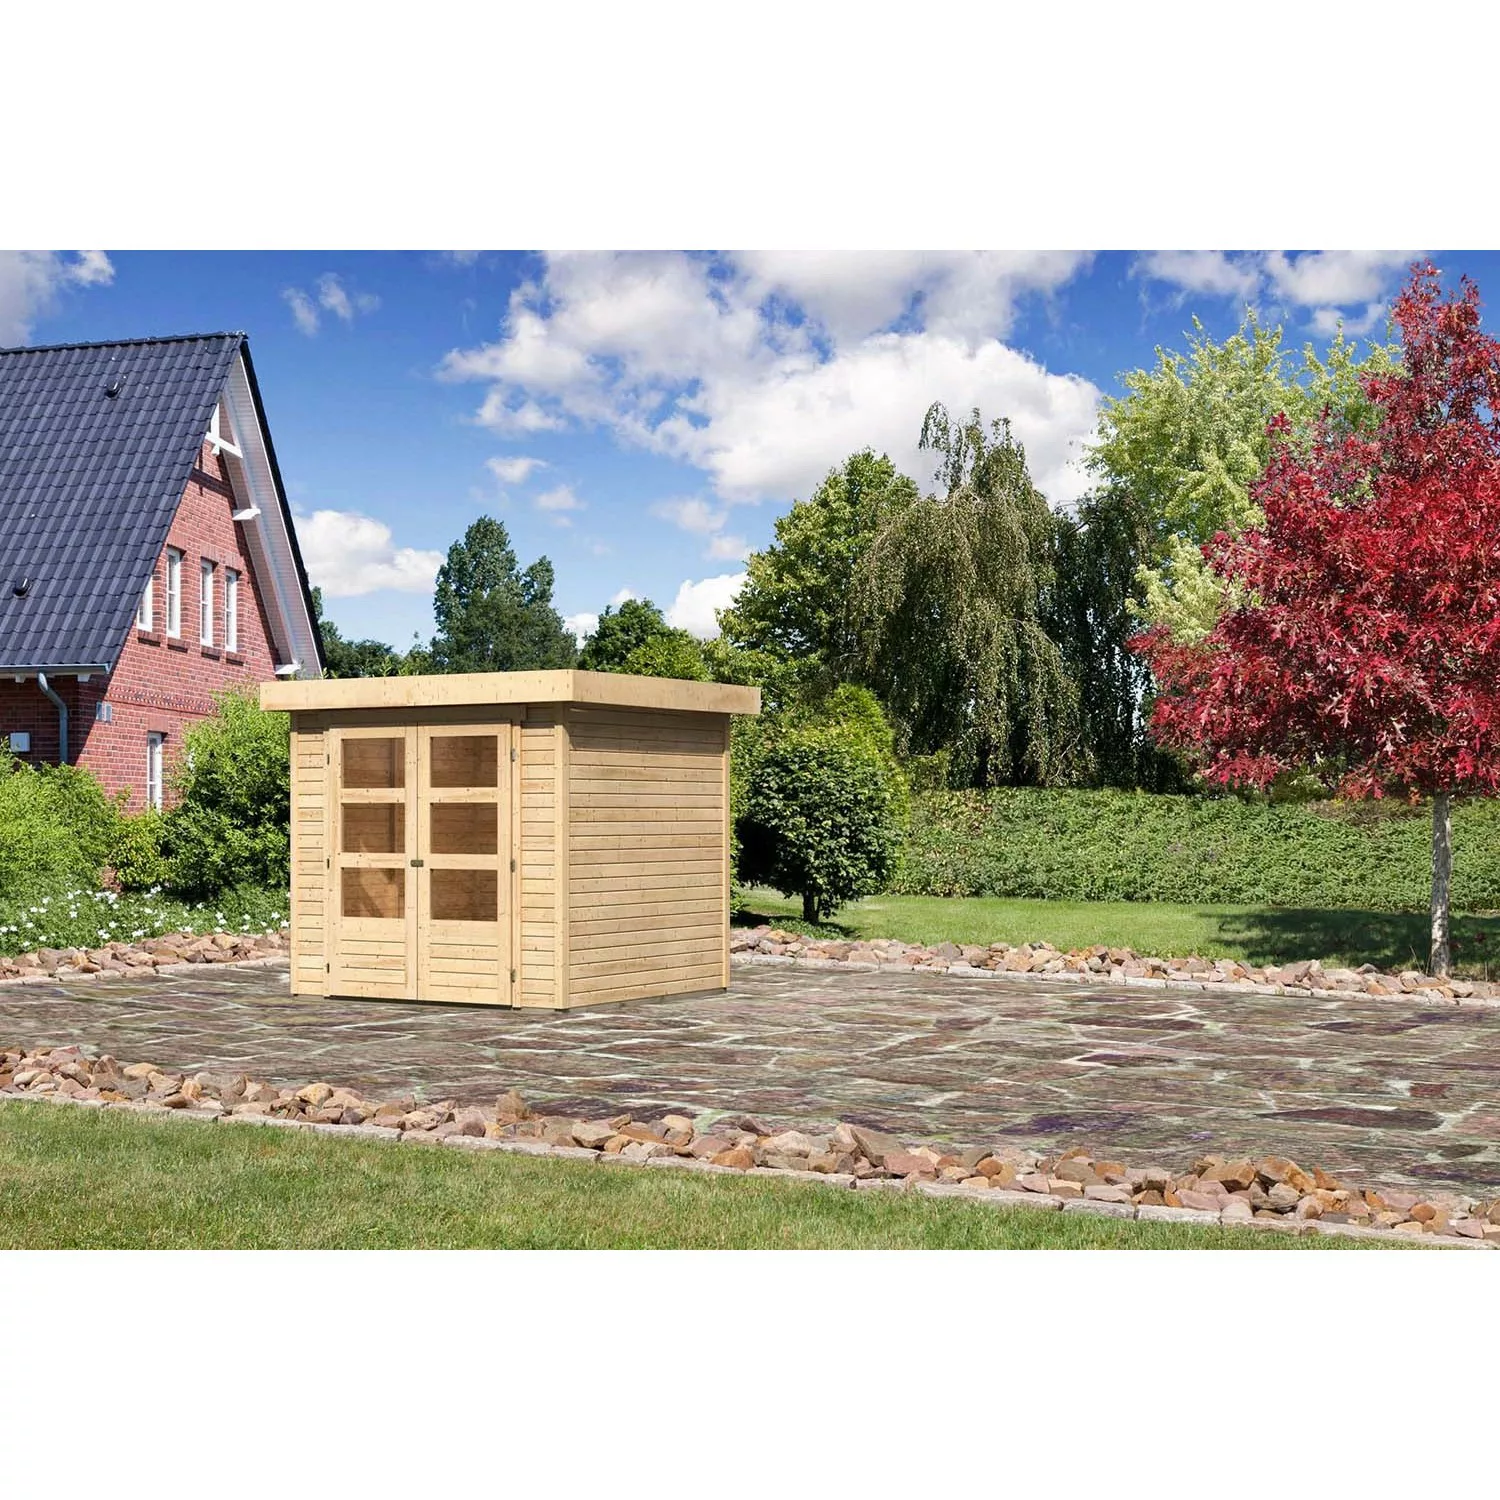 Karibu Holz-Gartenhaus Boras Natur Flachdach Unbehandelt 209 cm x 213 cm günstig online kaufen